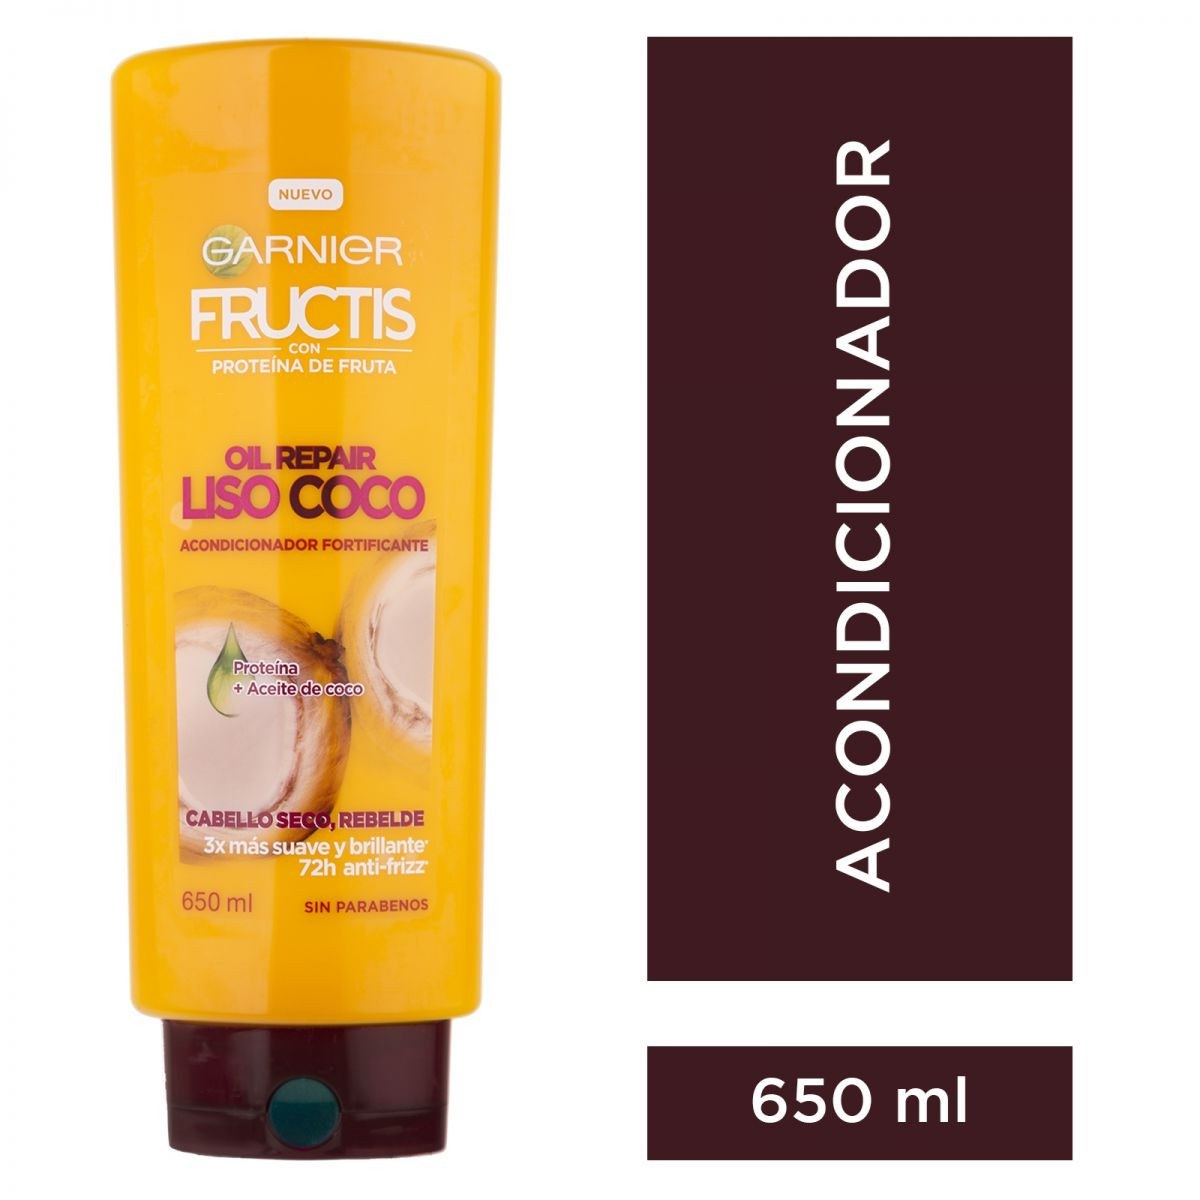 Fructis Oil R Aco Liso Coco 650Ml